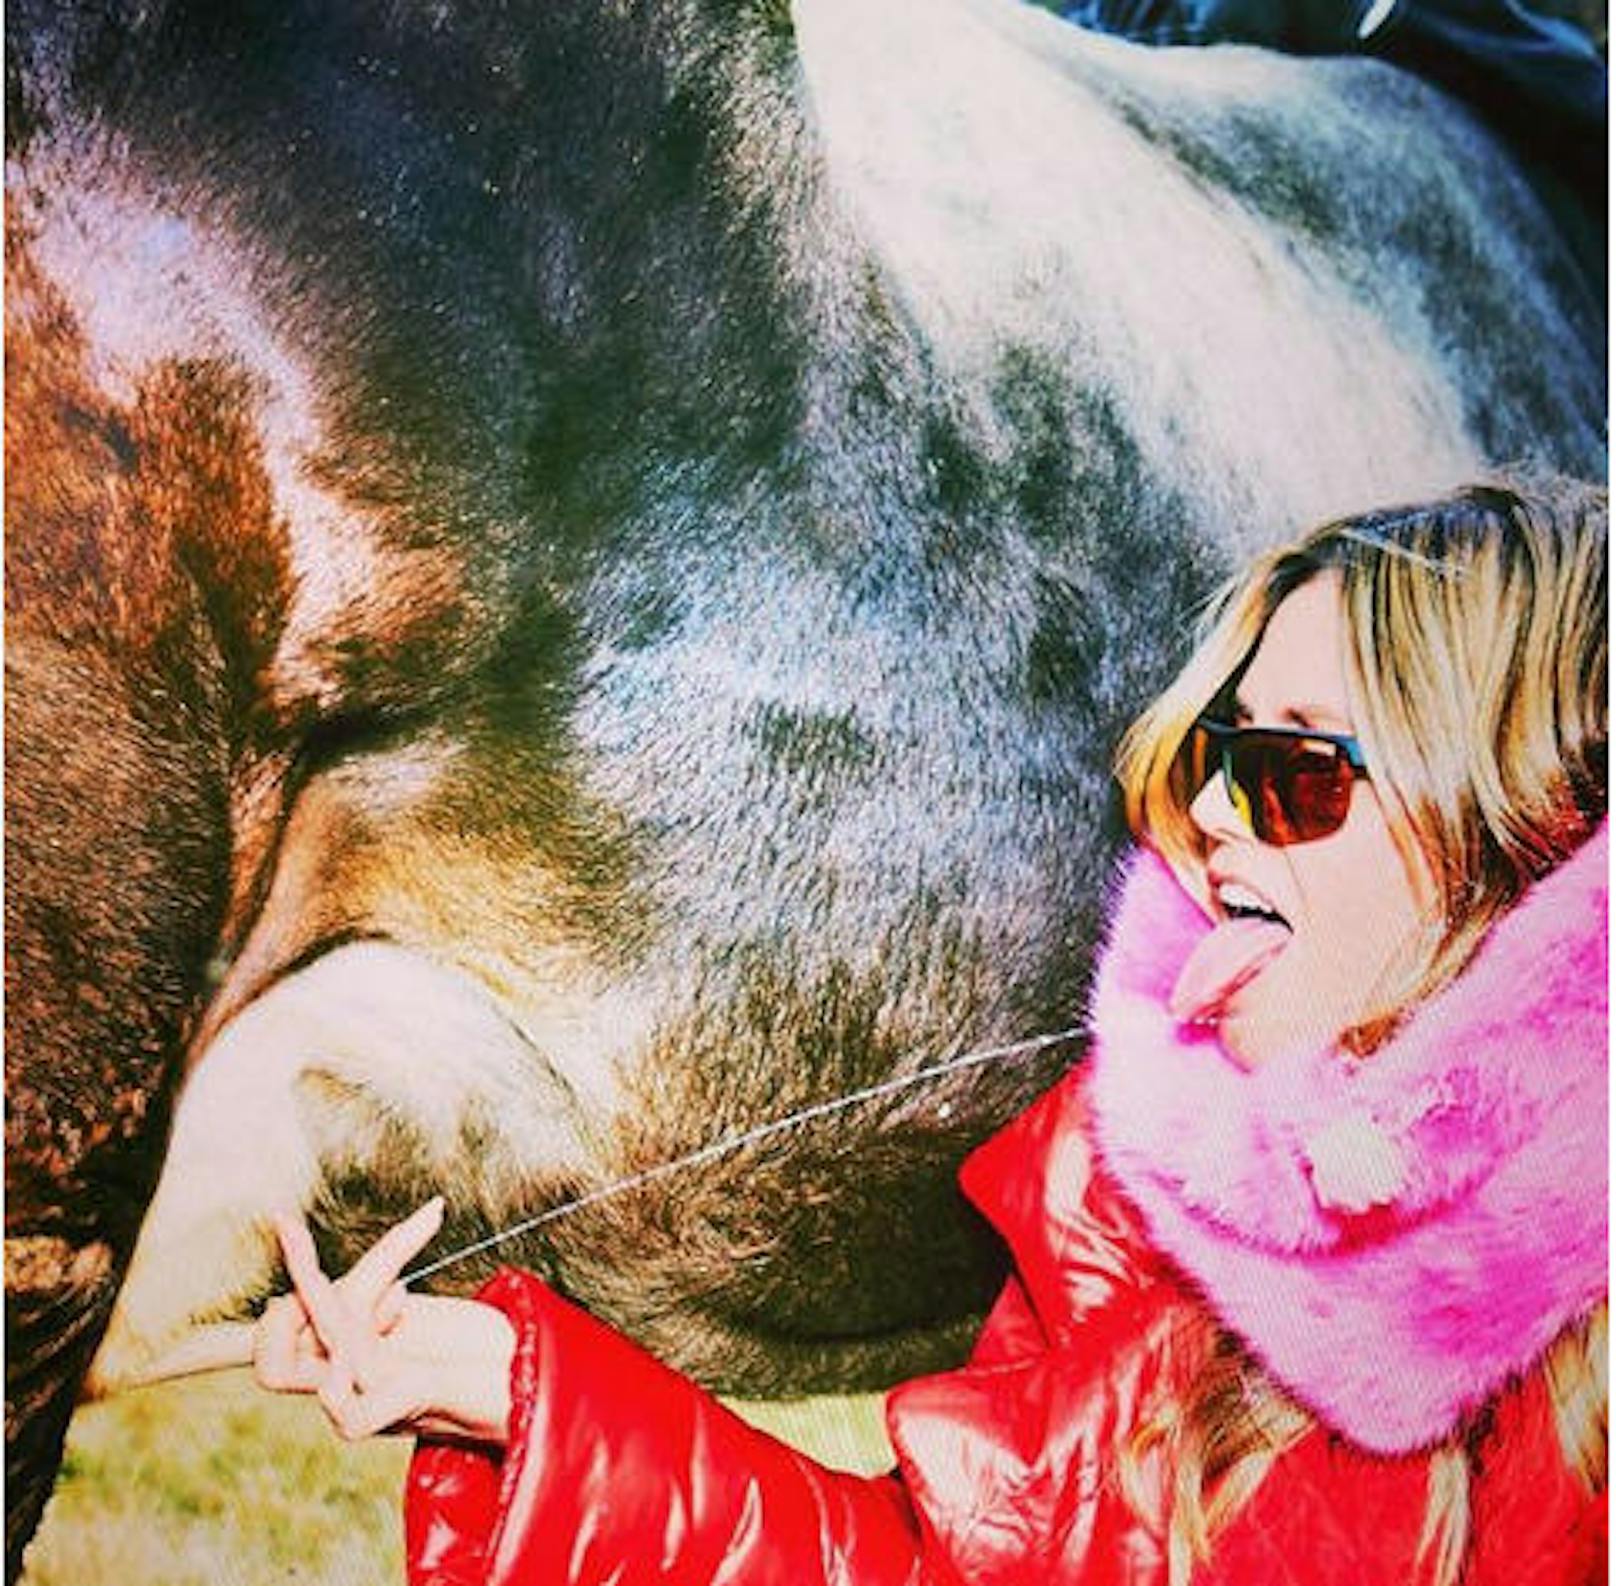 10.11.2018: Supermodel Heidi Klum zeigt, wie sie eine Euter in der Hand hält und sich frische Milch in den Mund spritzen lässt. Viele ihrer Fans finden das Foto "eklig".  <a href="https://www.heute.at/people/stars/story/Heidi-Klum-Instagram-Kuh-Foto-Milch-Aufregung-54192369">Den Artikel dazu finden Sie hier</a>